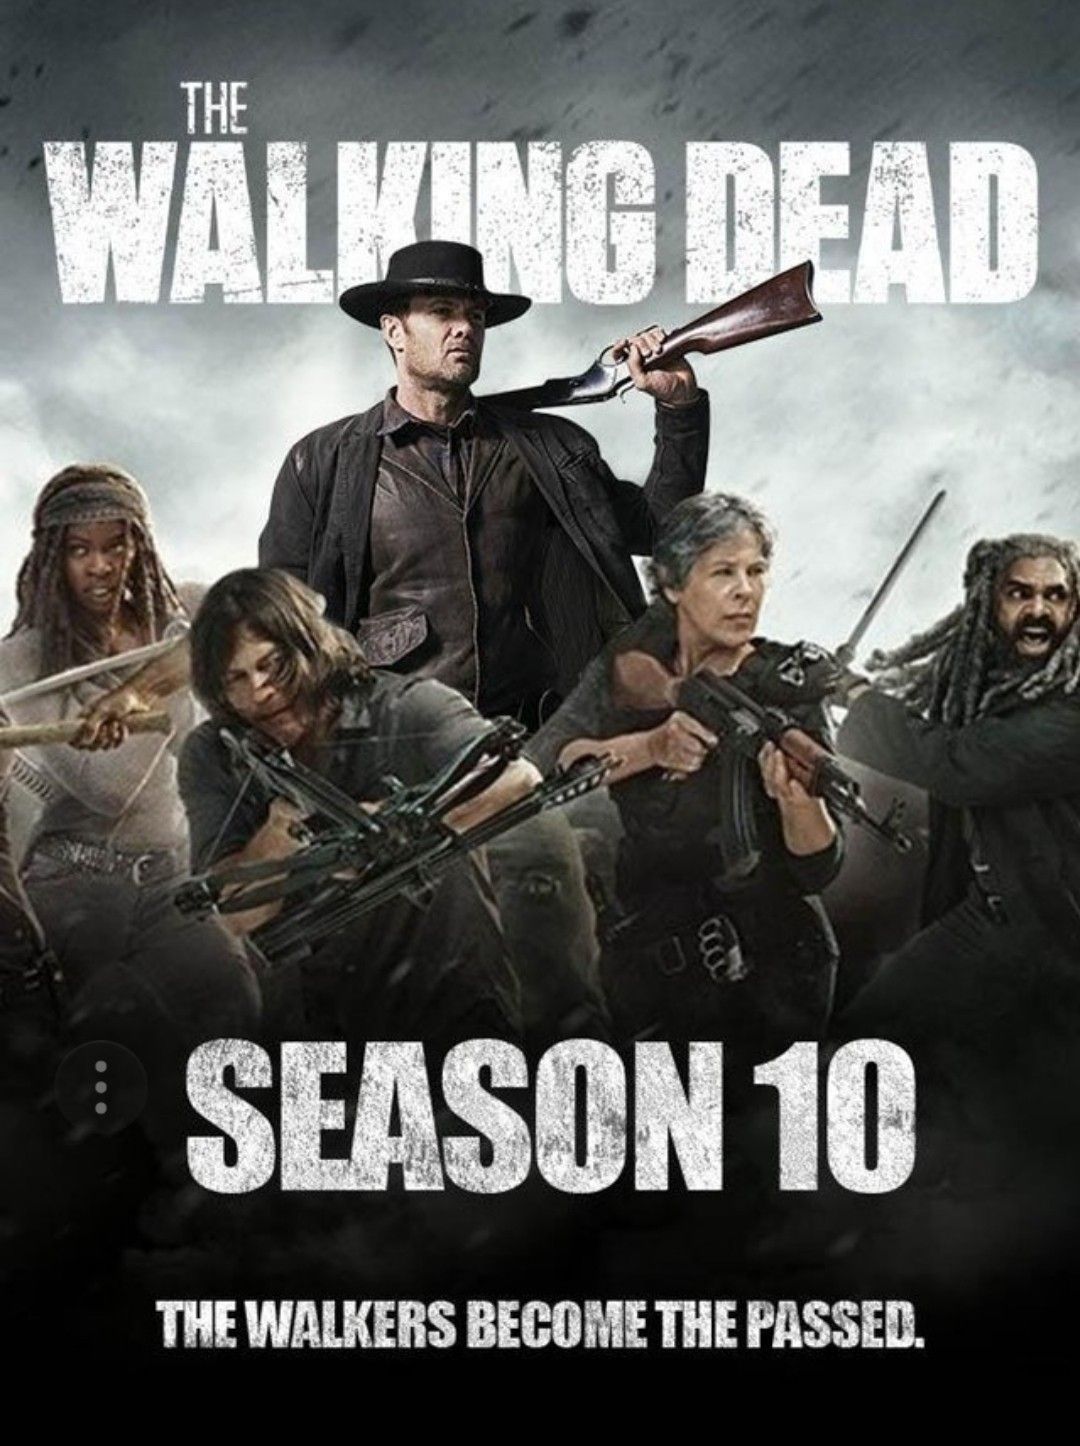 Walking Dead Season 10 On Dvd - HD Wallpaper 